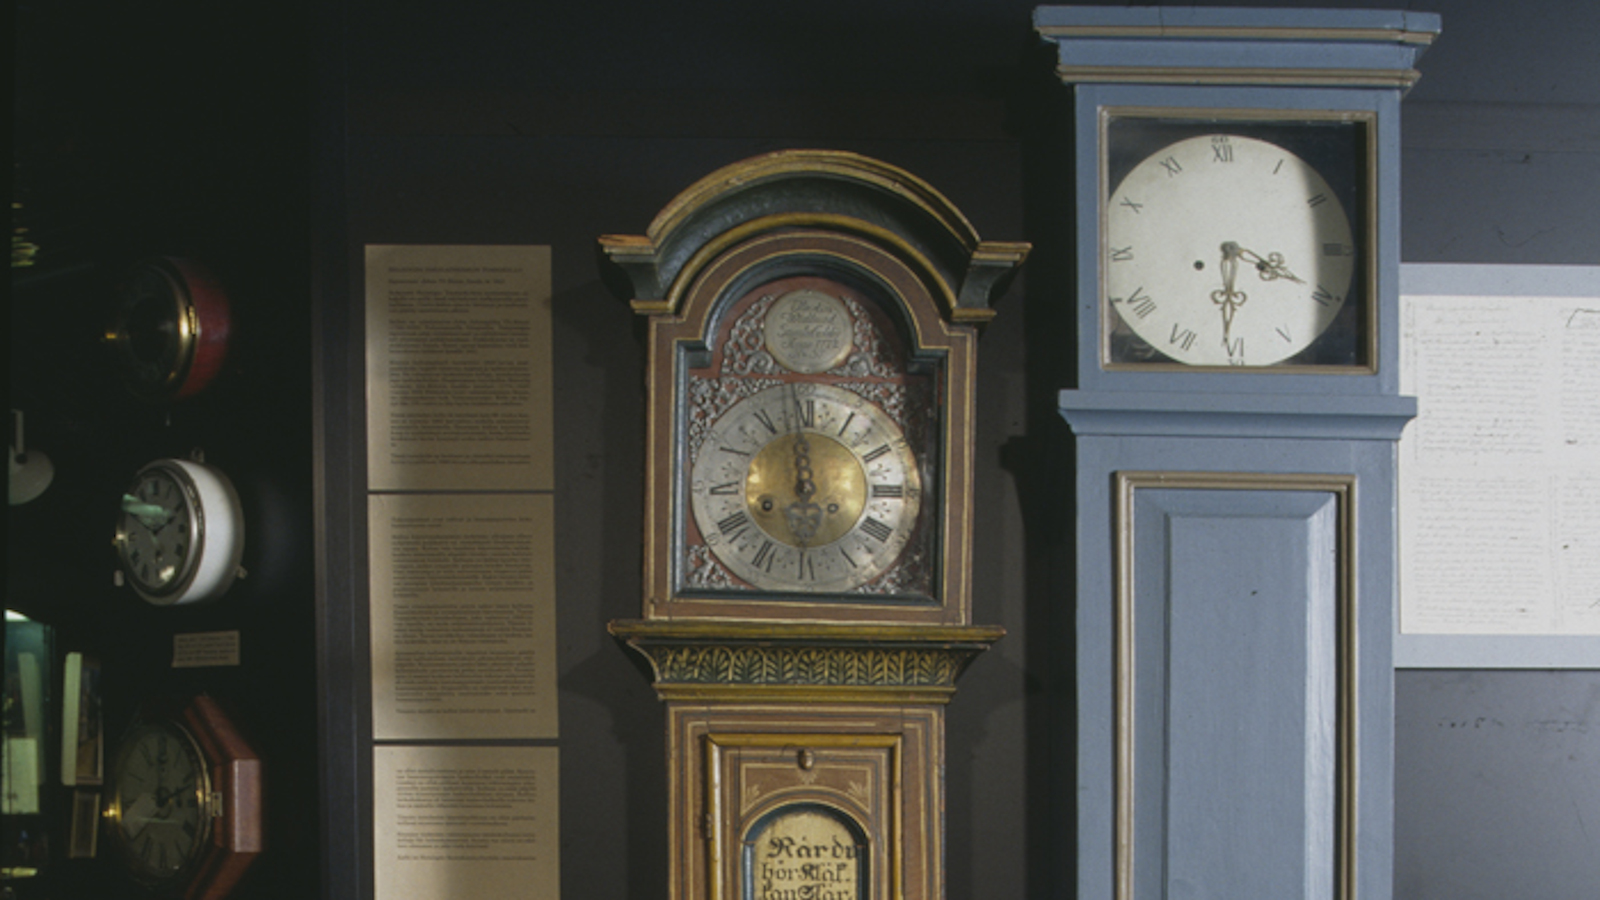 Kello- ja korumuseossa on runsaasti erilaisia eri aikakusien kelloja kuten kuvassa näkyviä lattiakelloja.